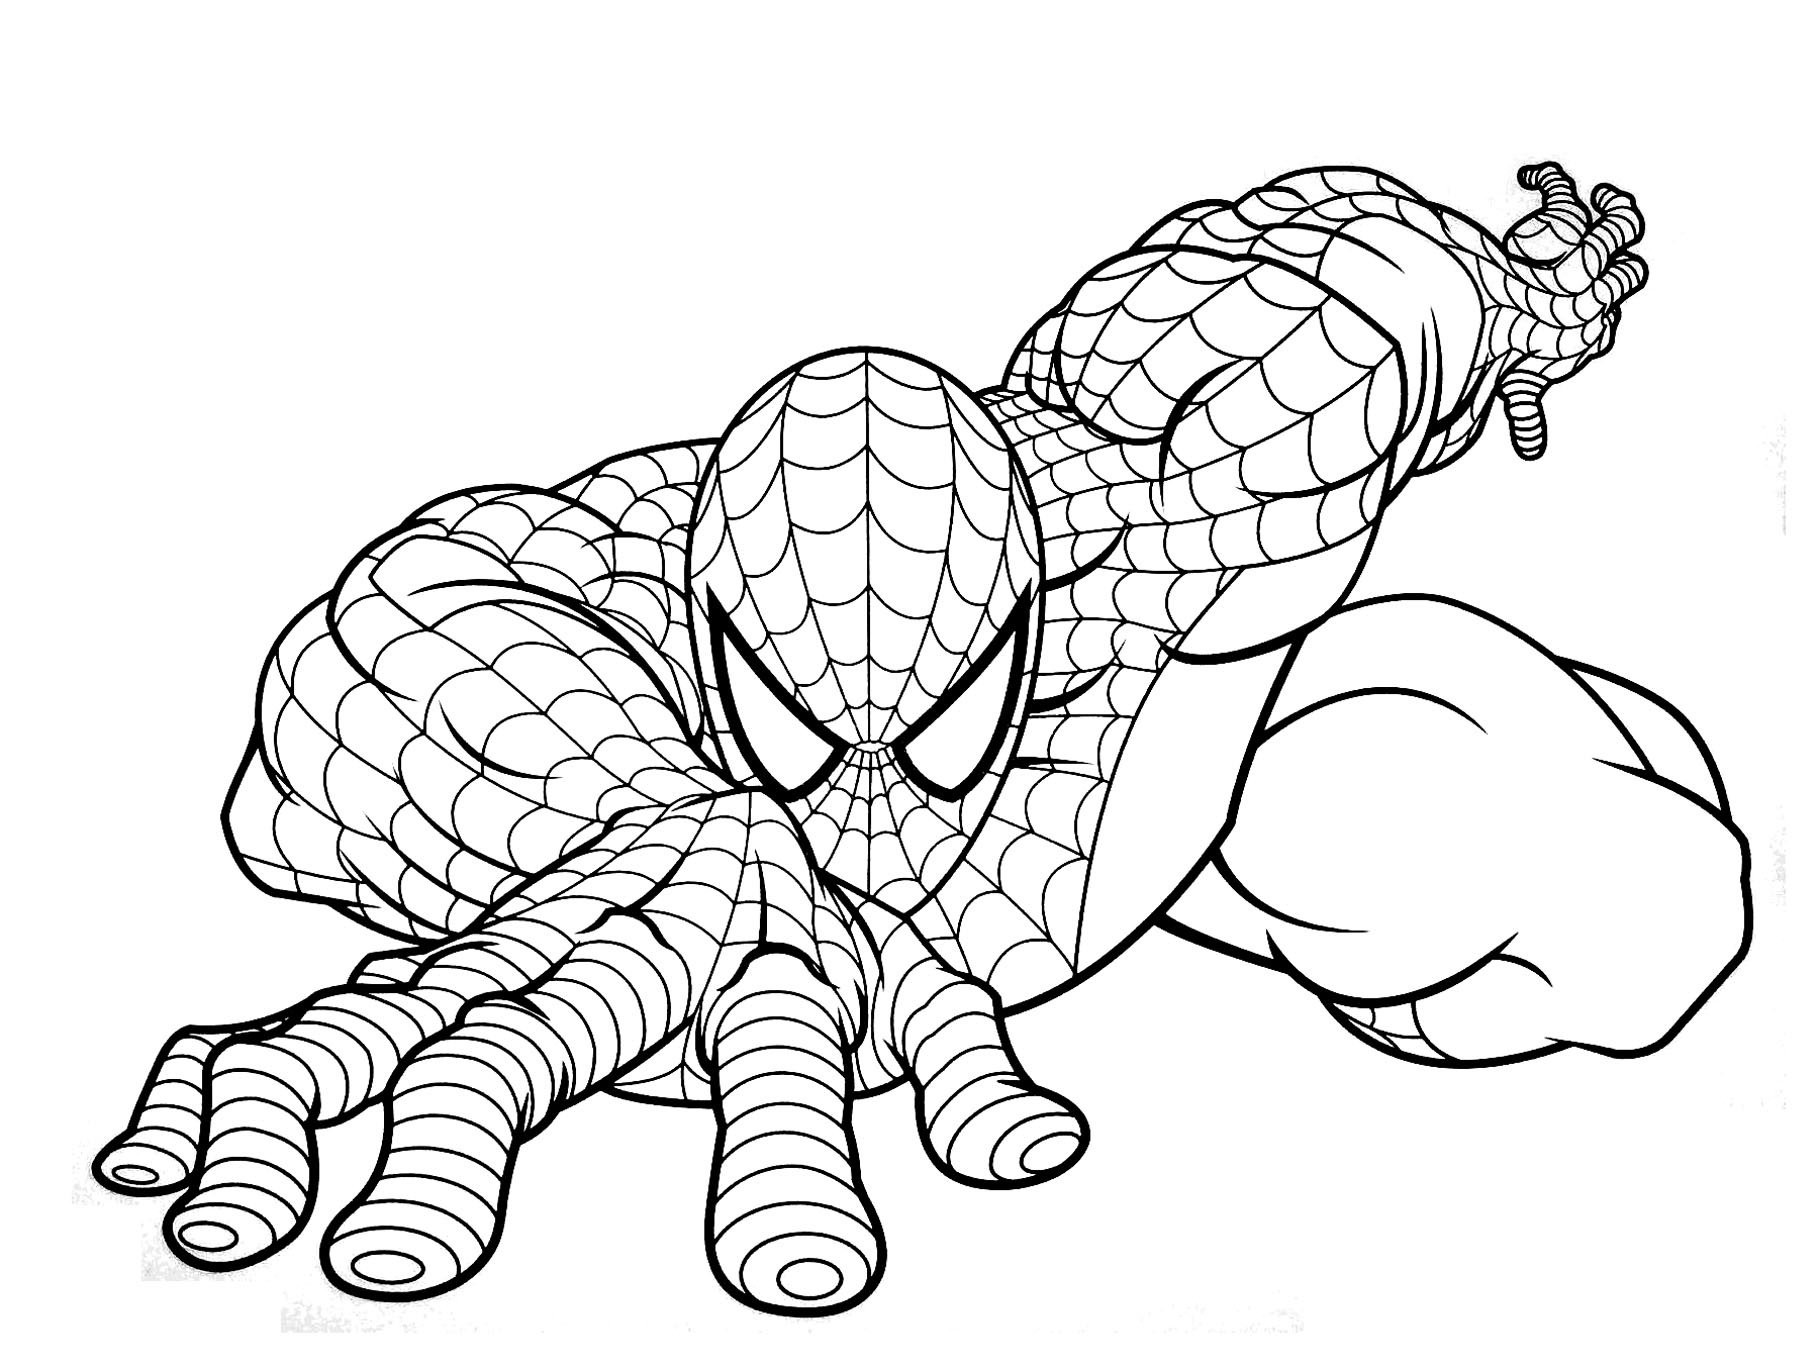 Hình tô màu người nhện, siêu nhân nhện cho các bé trai